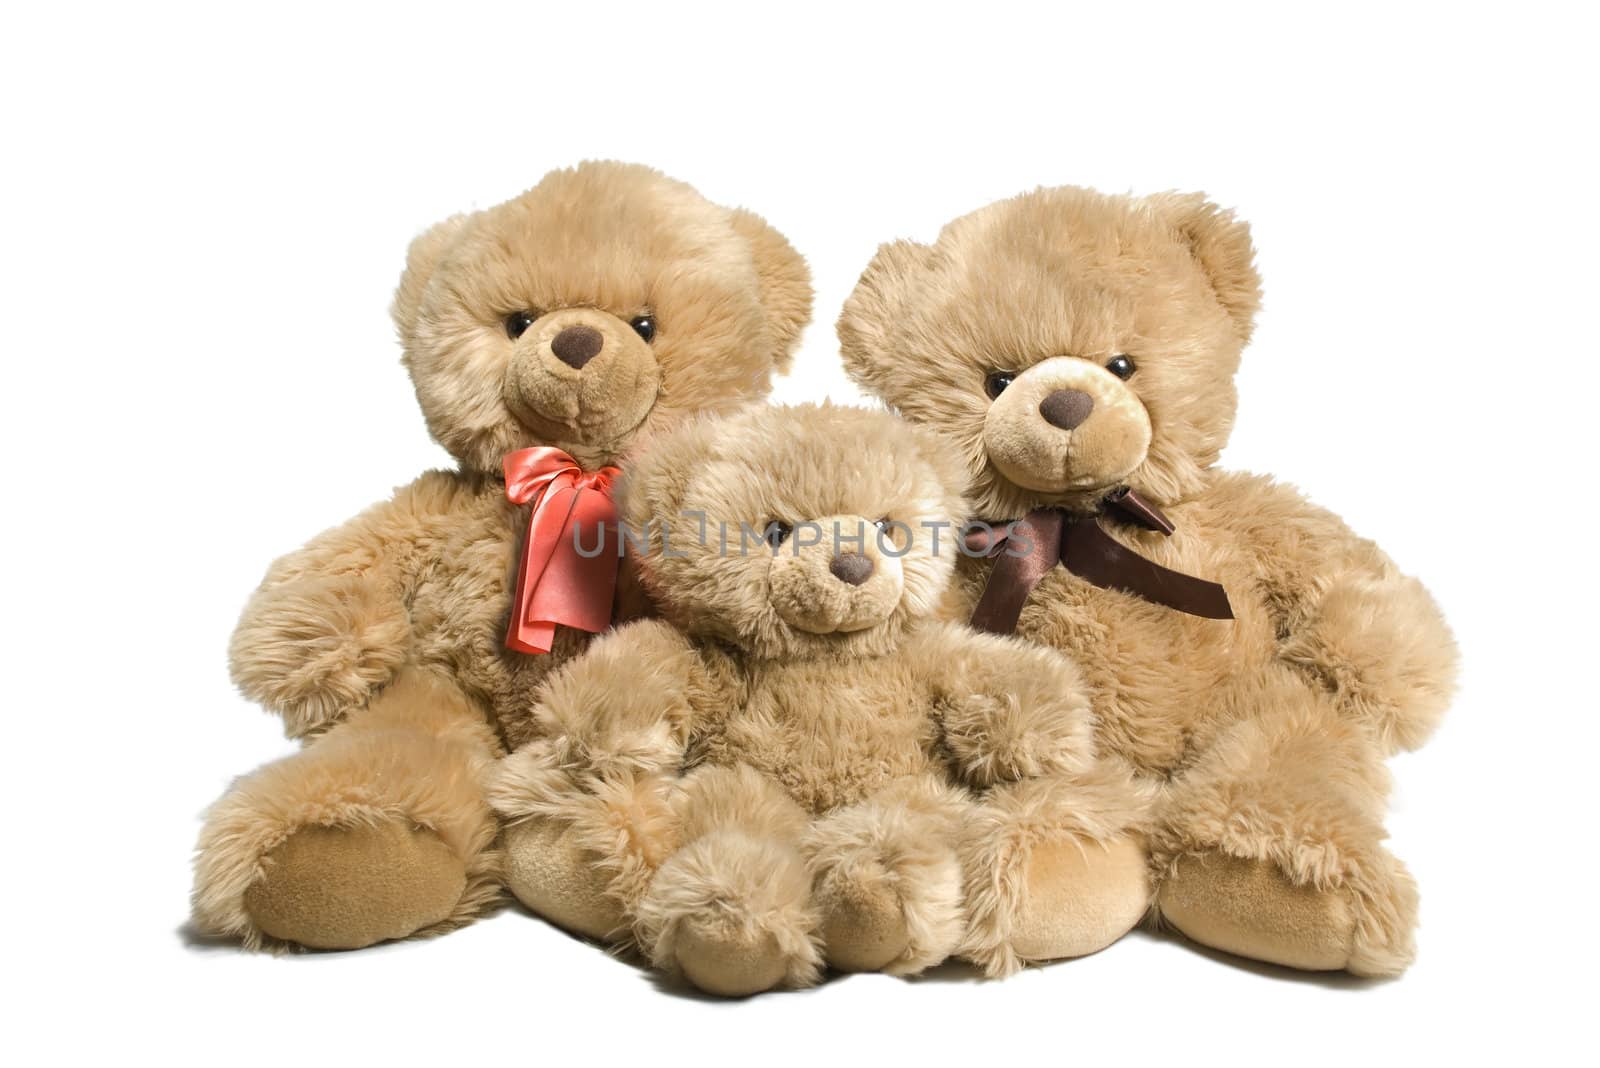 Three bears by zakaz